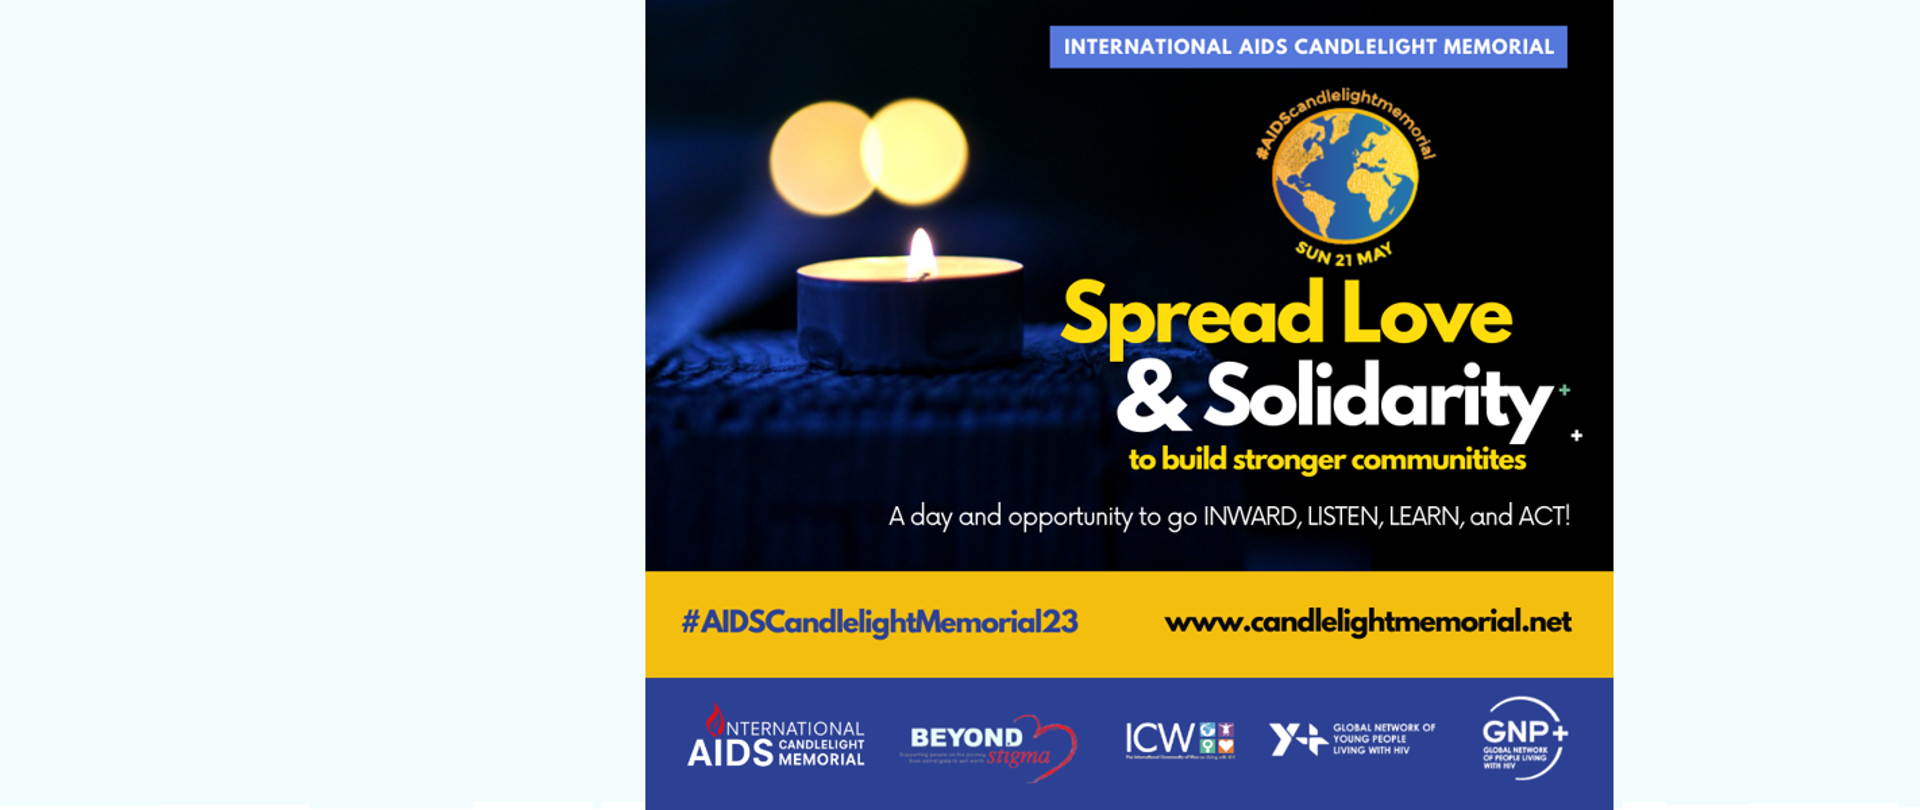 Zapalona w tle świeczka, napis po angielsku "Międzynarodowy dzień pamięci o zmarłych na AIDS"